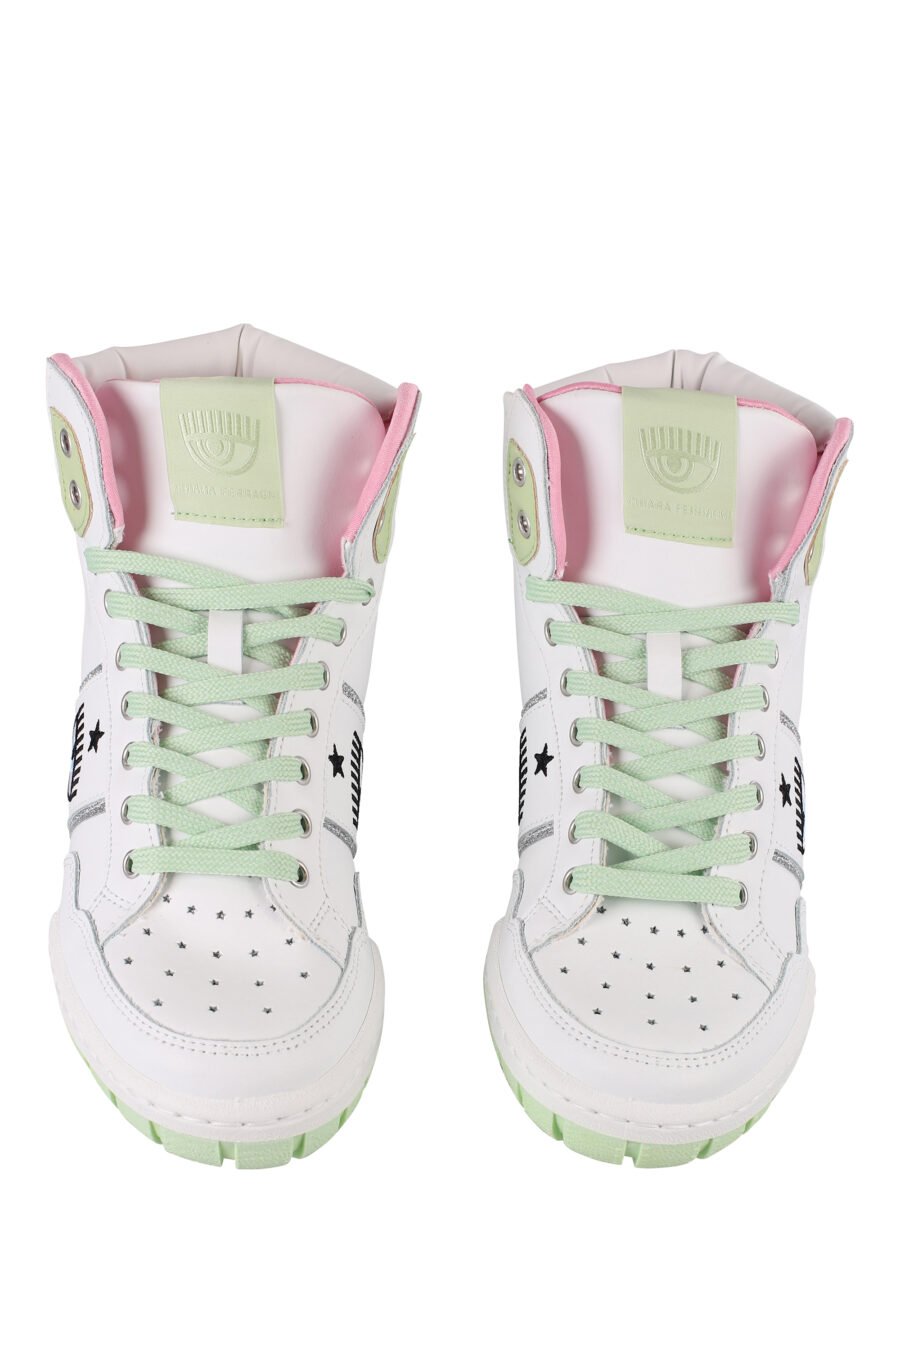 Zapatillas blancas y verde con logo ojo y detalles rosas - IMG 1228